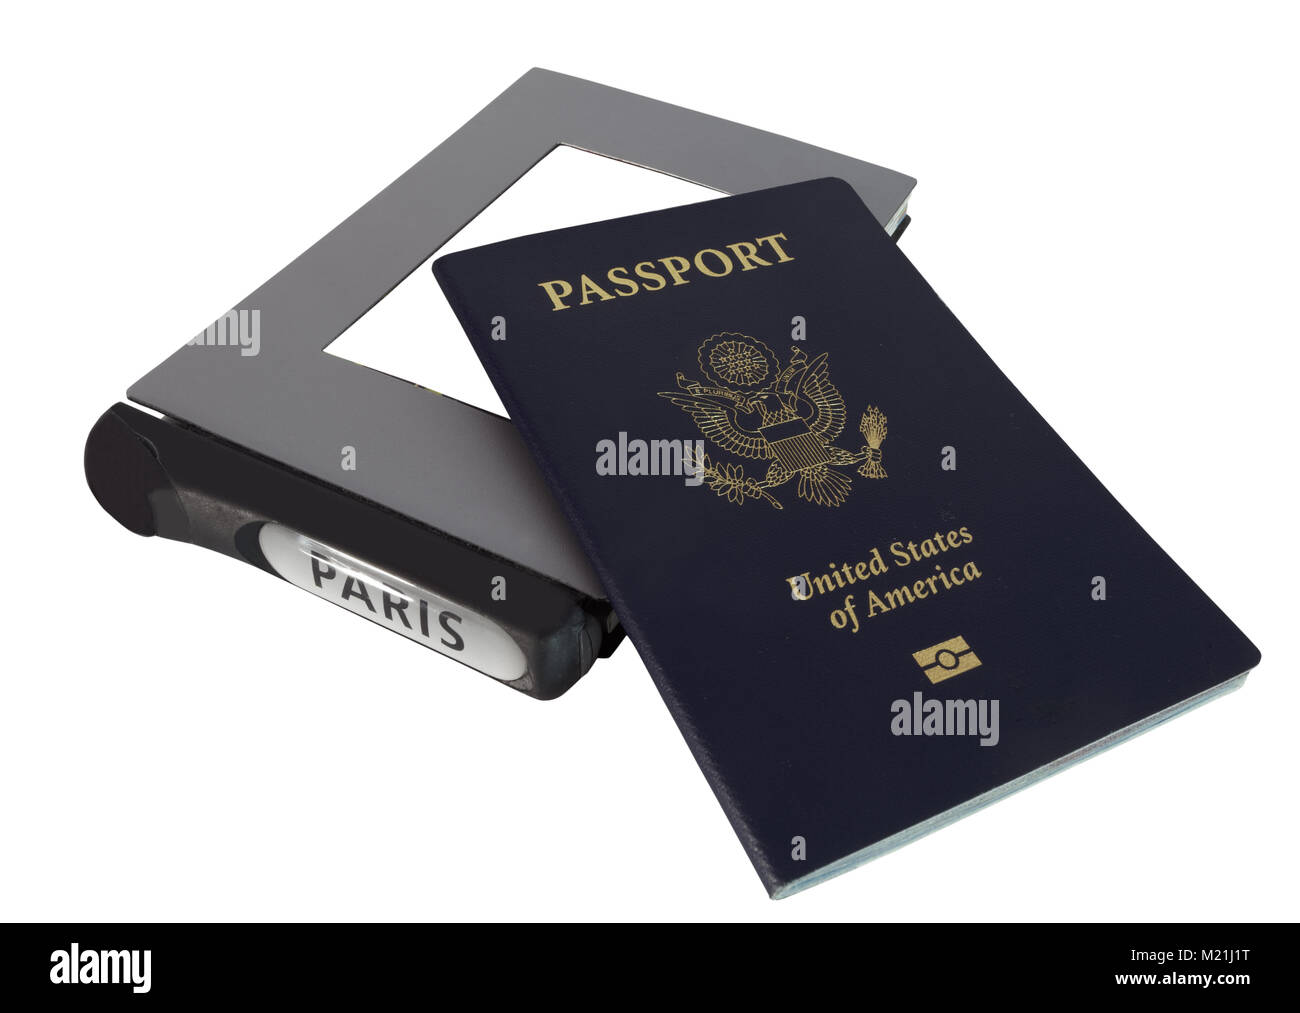 Pasaporte de los Estados Unidos aislado con libros de viajes a París, Milán y Florencia. Foto de stock